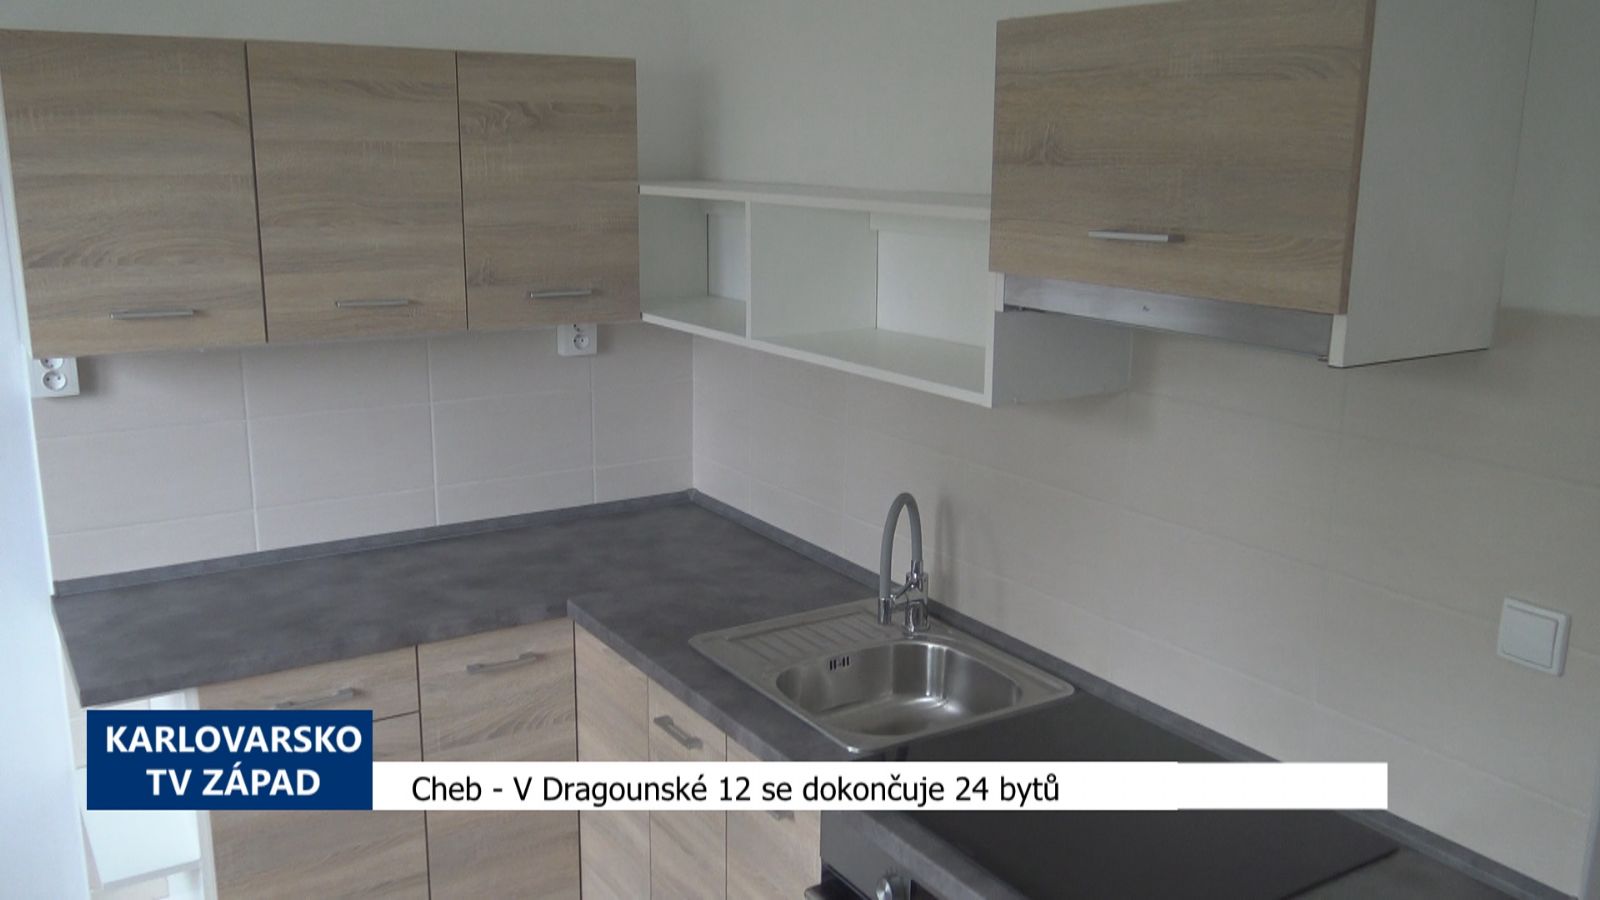 Cheb: V Dragounské 12 se dokončuje 24 bytů (TV Západ)